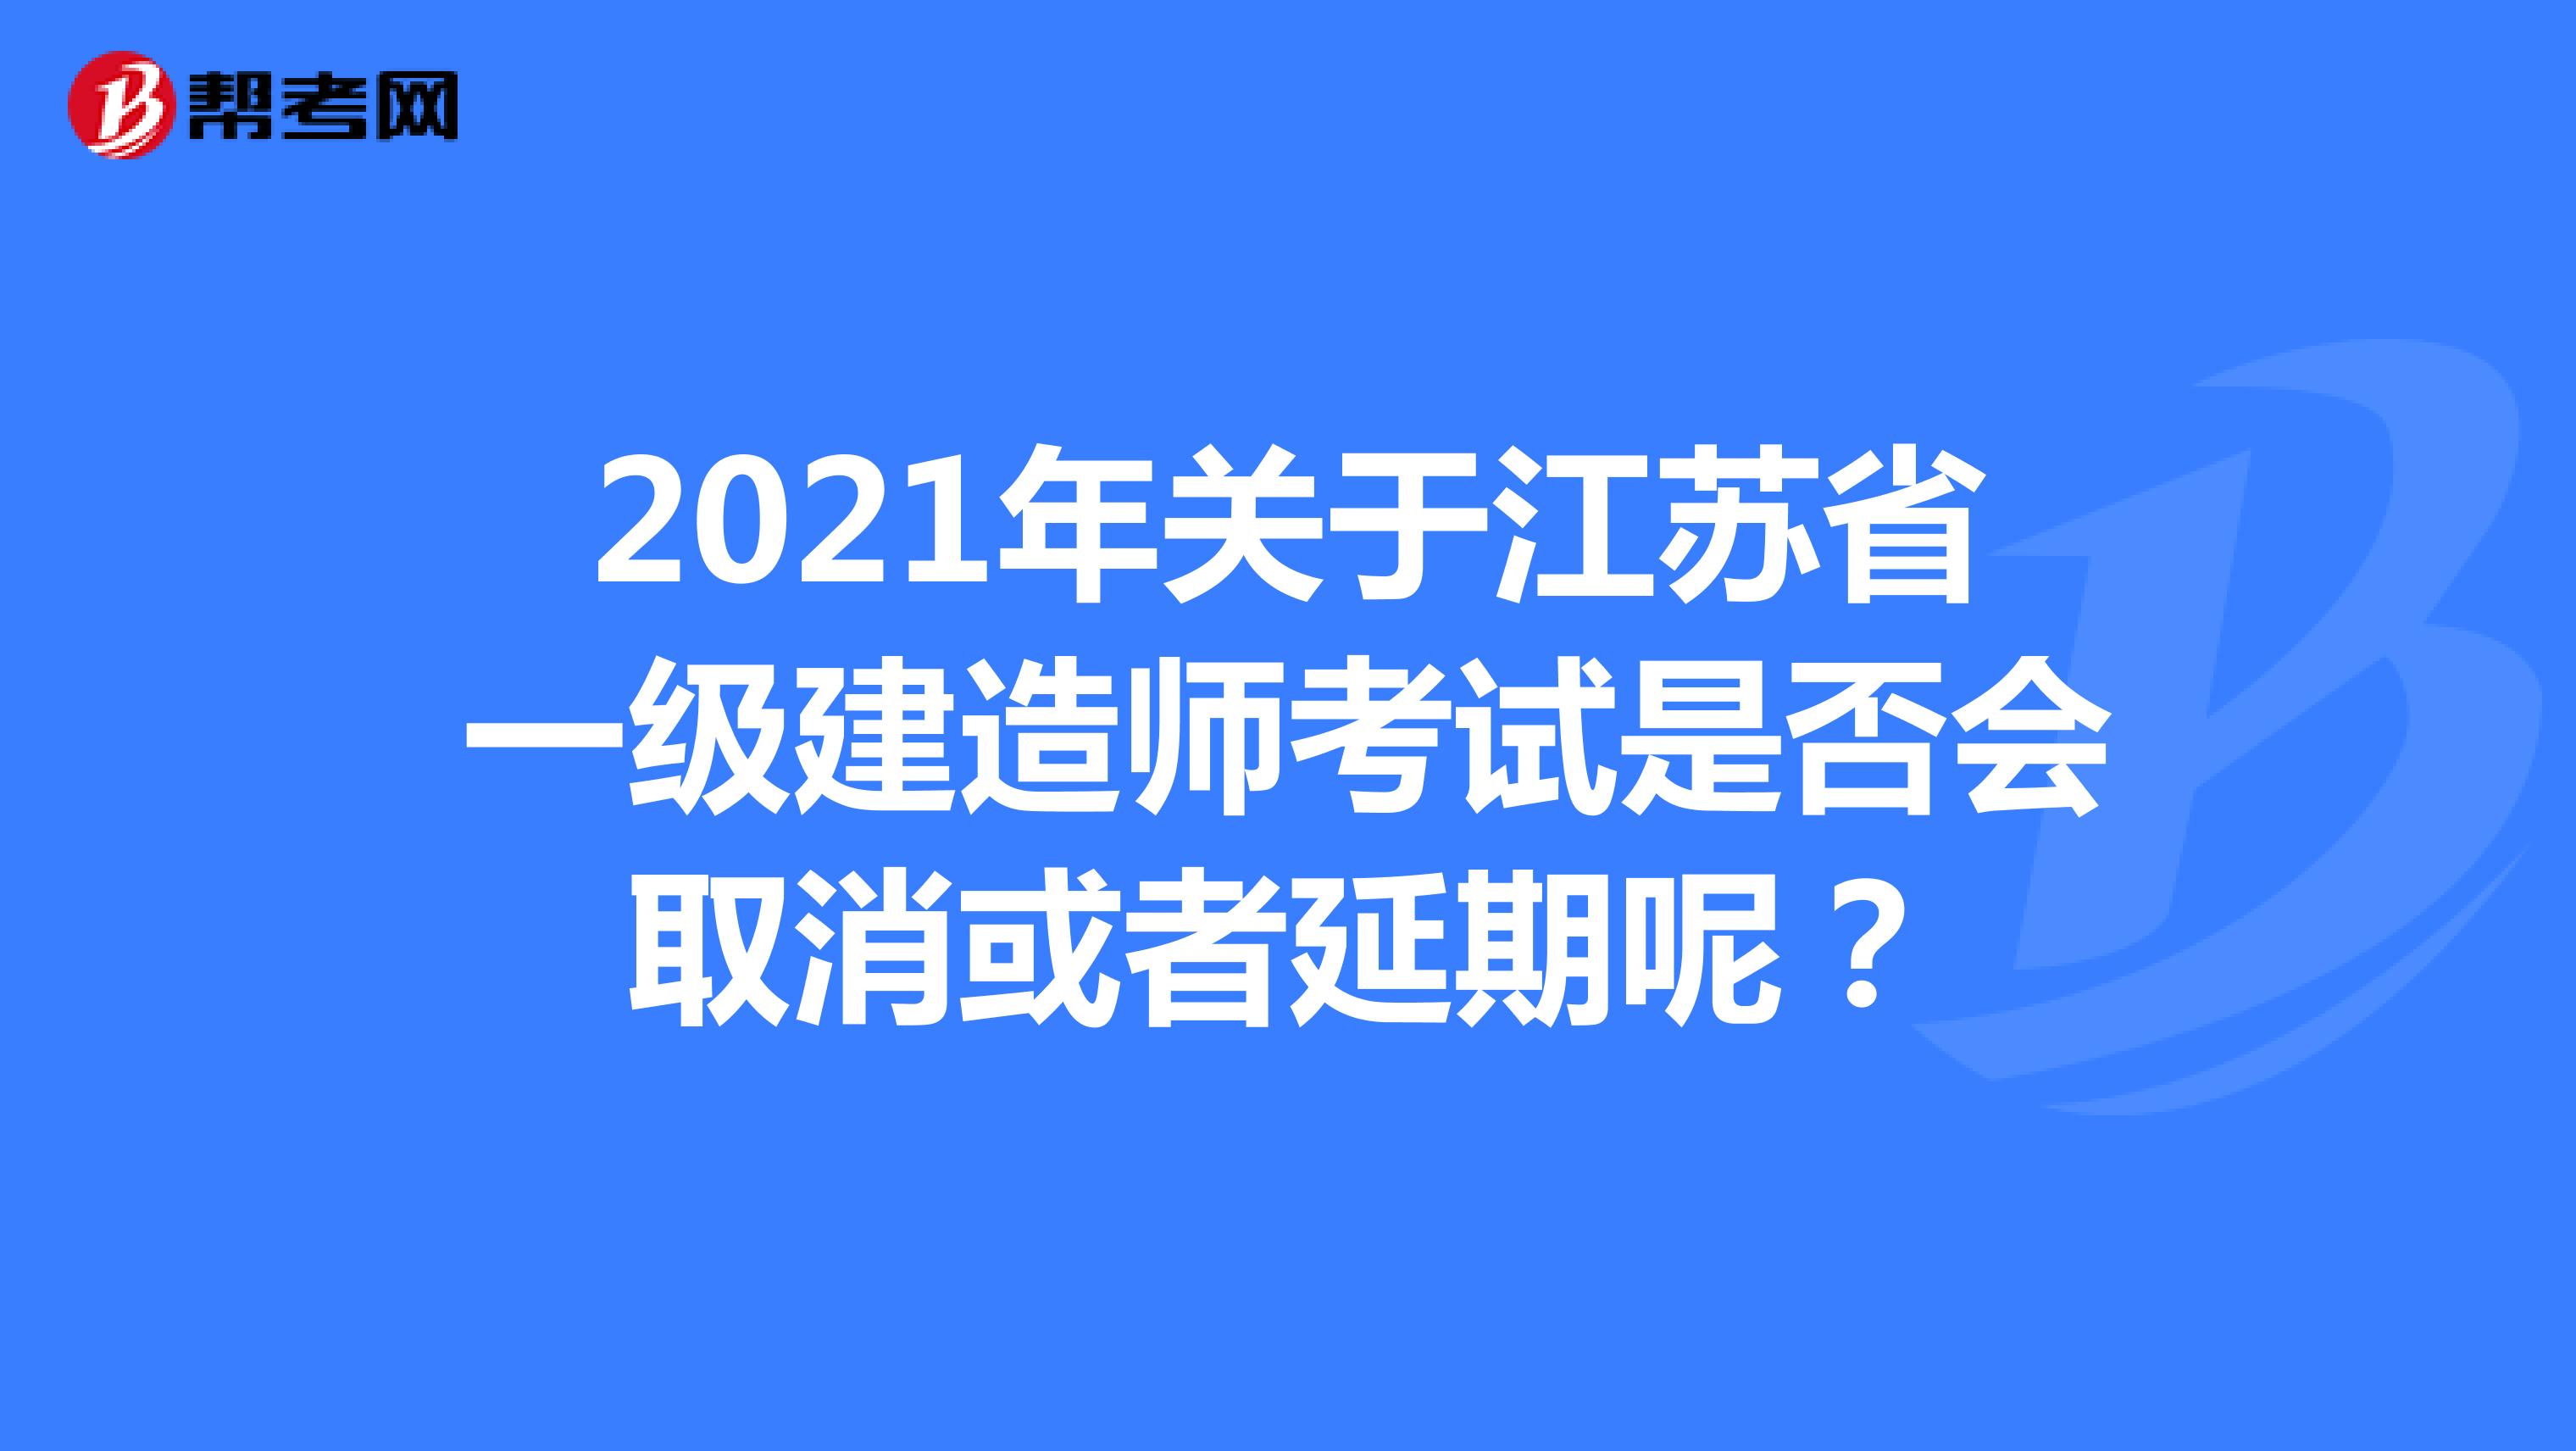 2021年关于江苏省一级建造师考试是否会取消或者延期呢？